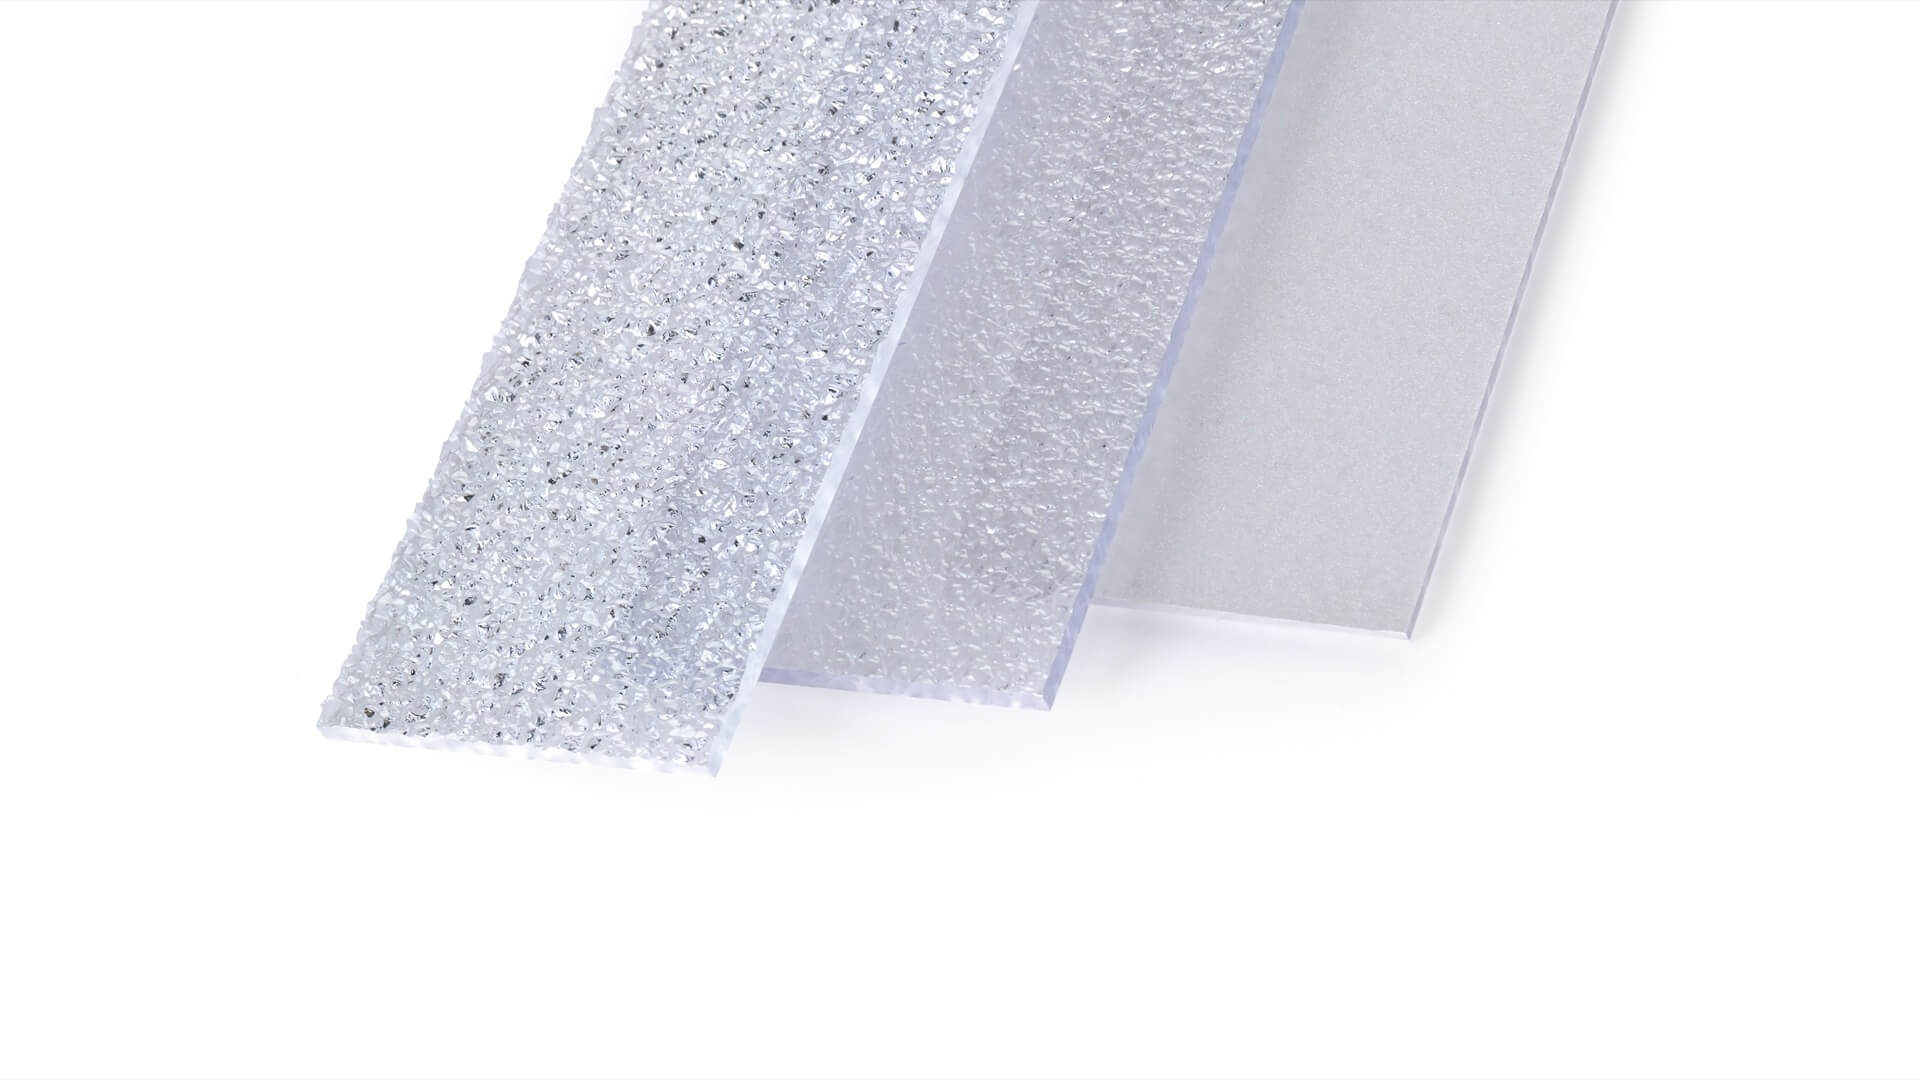 INNOLUX Plaque polycarbonate alvéolaire épaisseur 4 mm 200 x 100